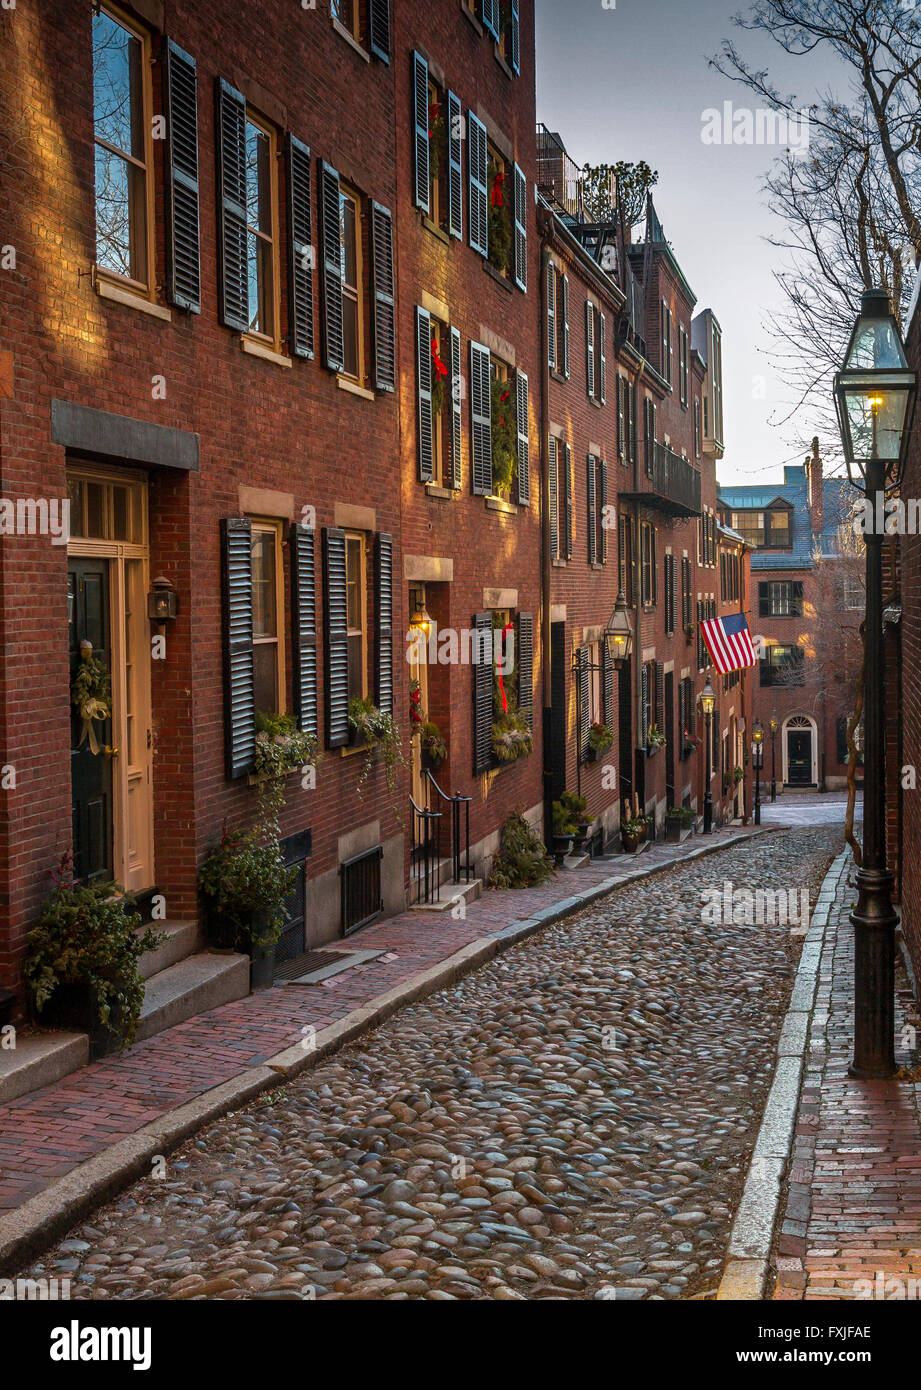 Acorn Street at night, in Beacon Hill, Boston, Massachusetts Stock Photo -  Alamy